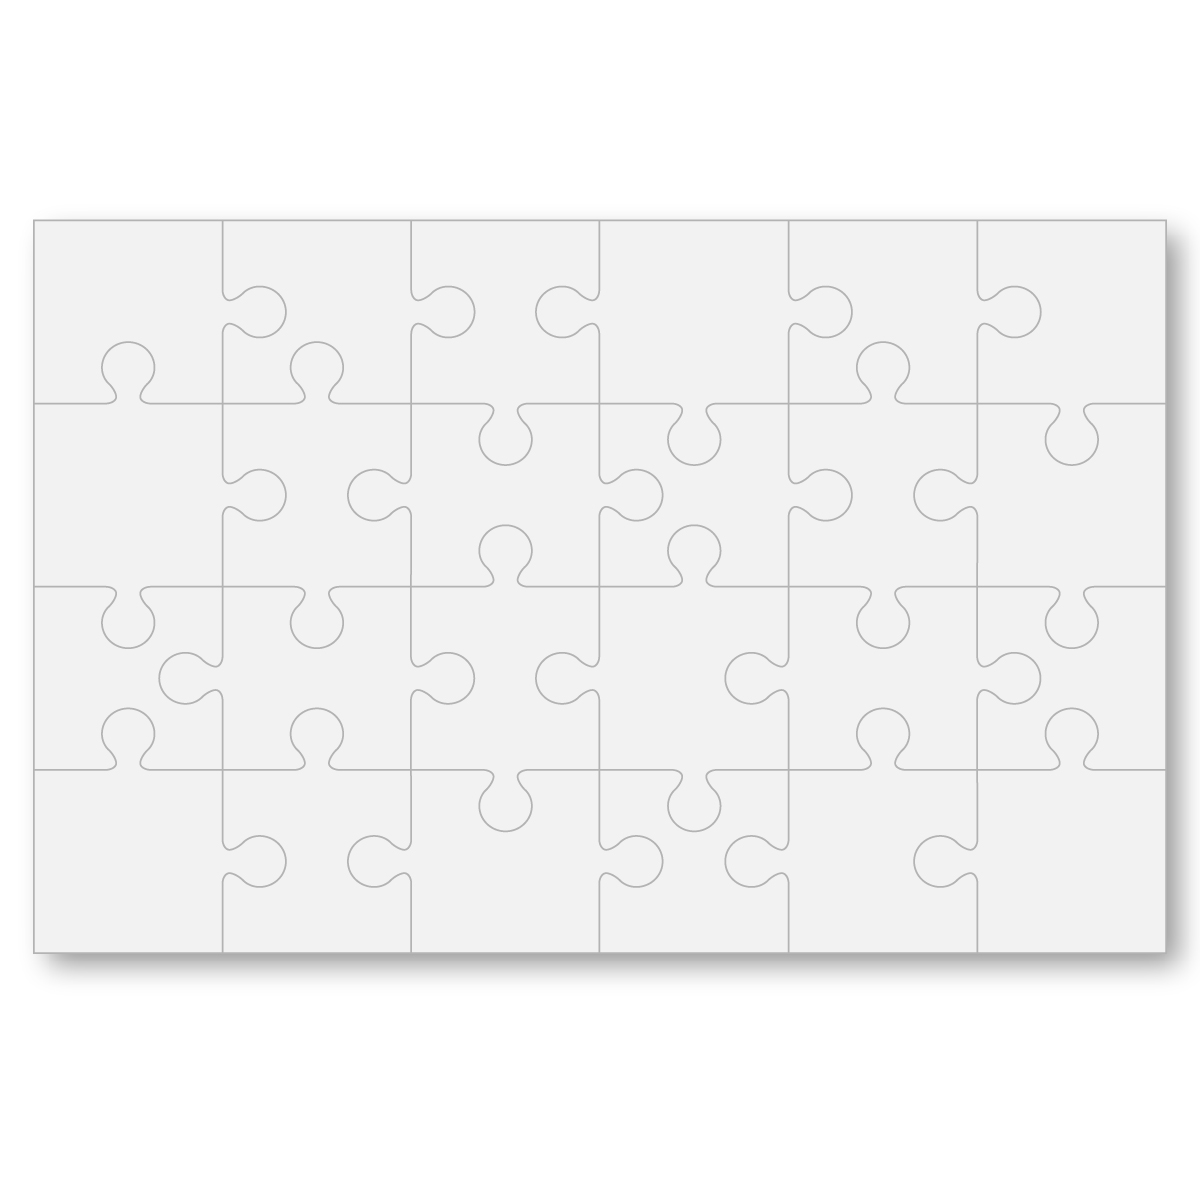 Full Color Board Puzzle 11 x 17